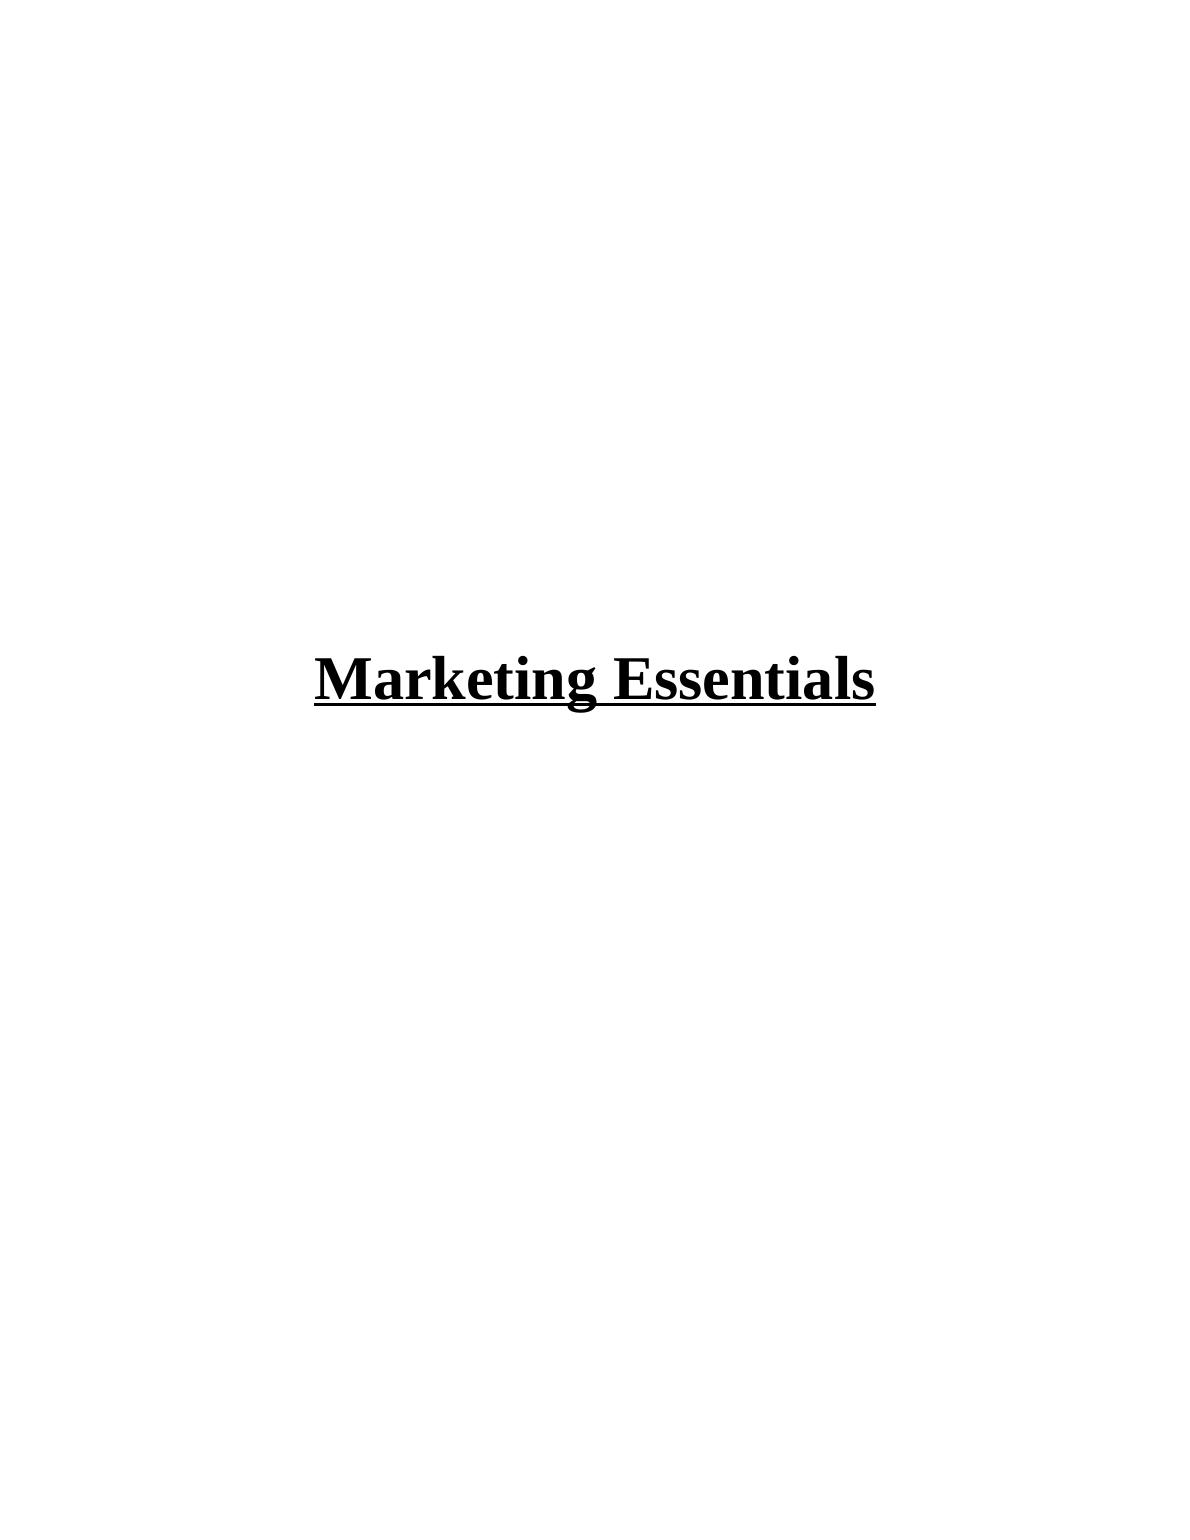 Essentials of marketing_1